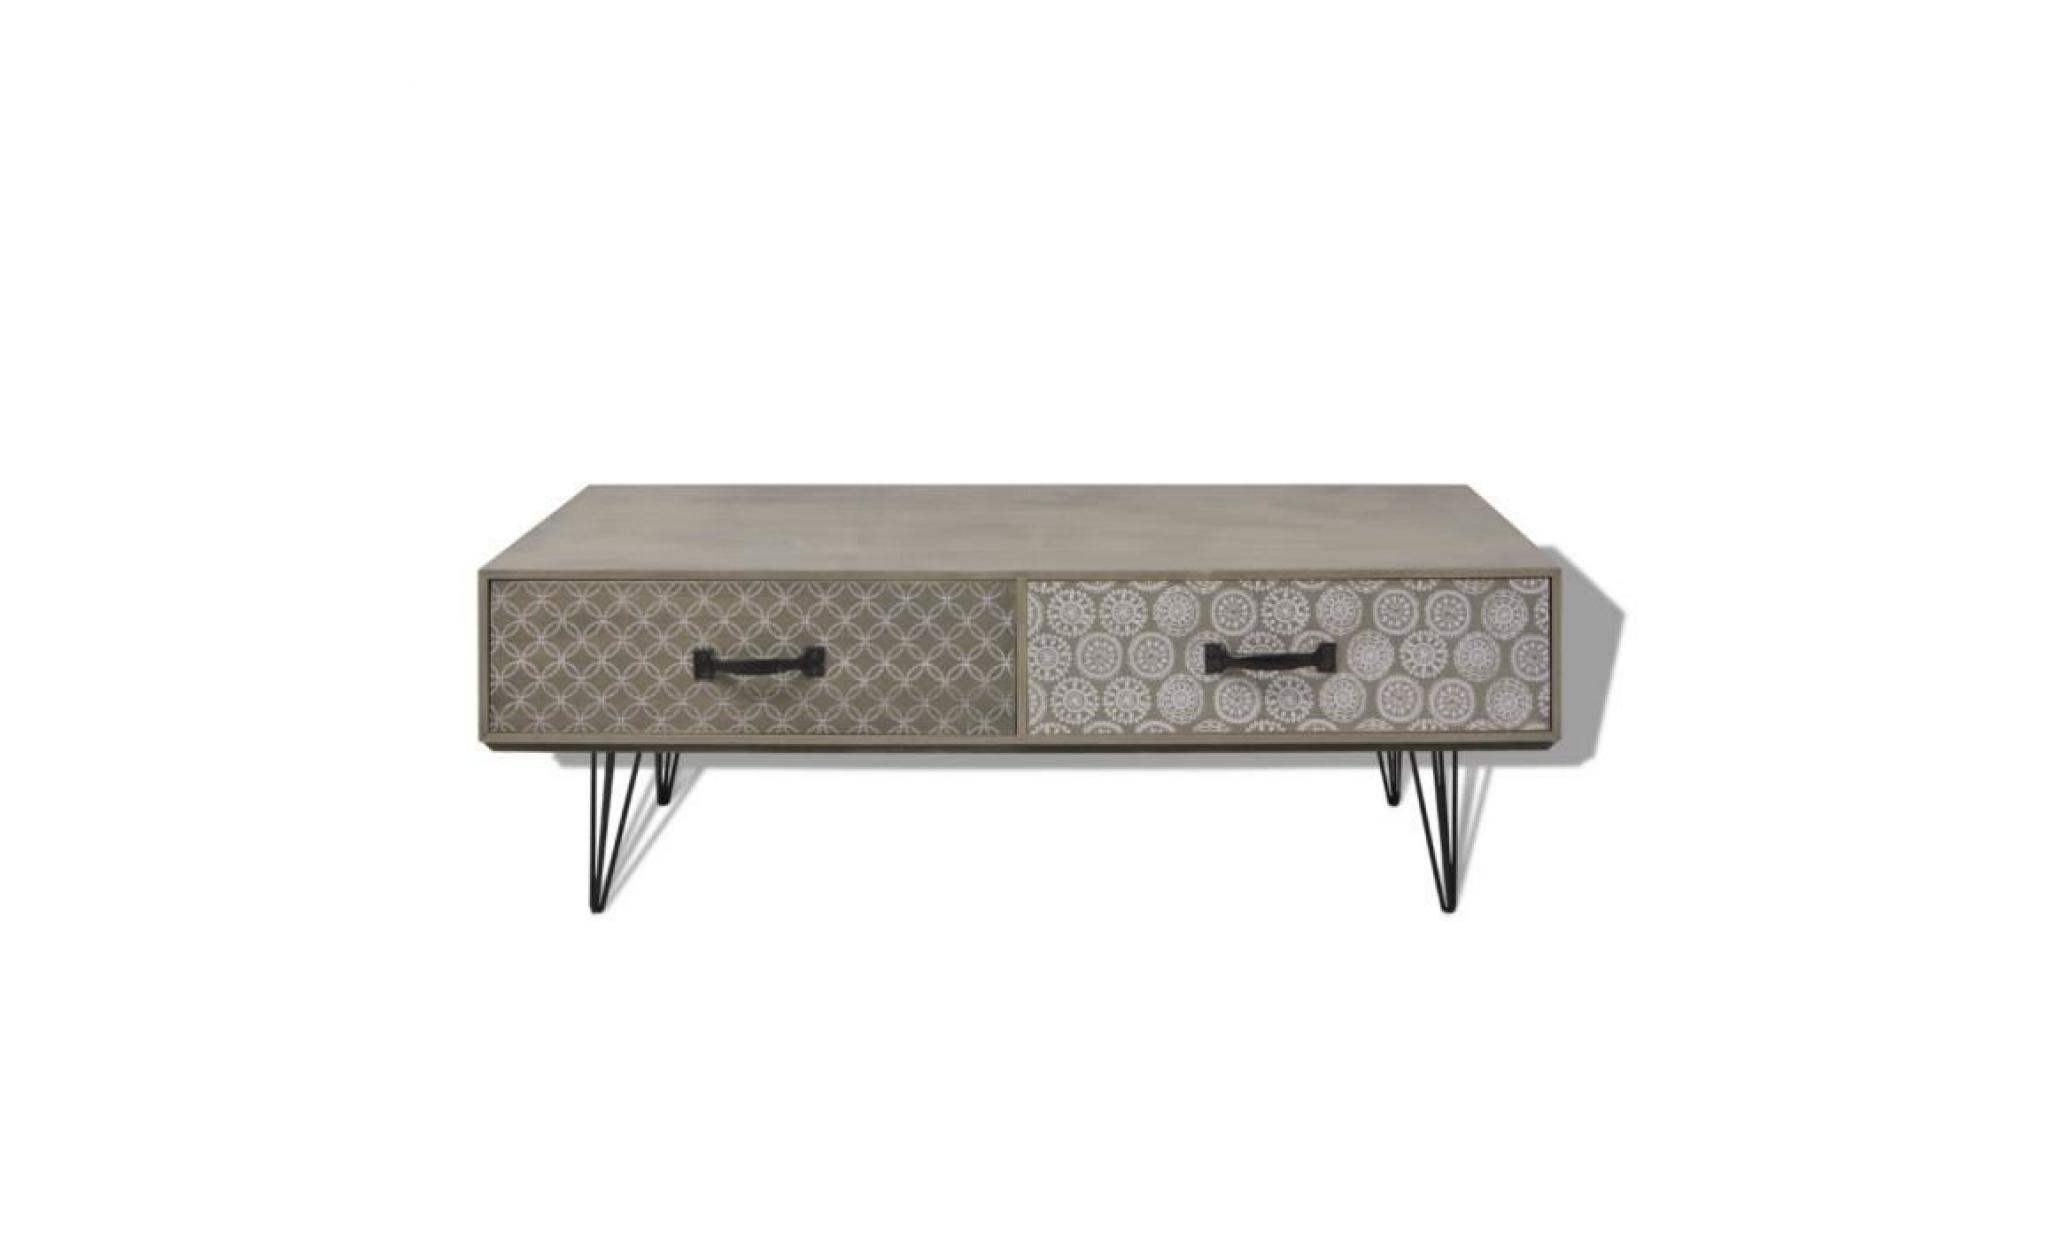 100 x 60 x 35 cm table basse avec 4 tiroirs en mdf+ métal haute qualité décoration rétro pour salon bureau beige pas cher